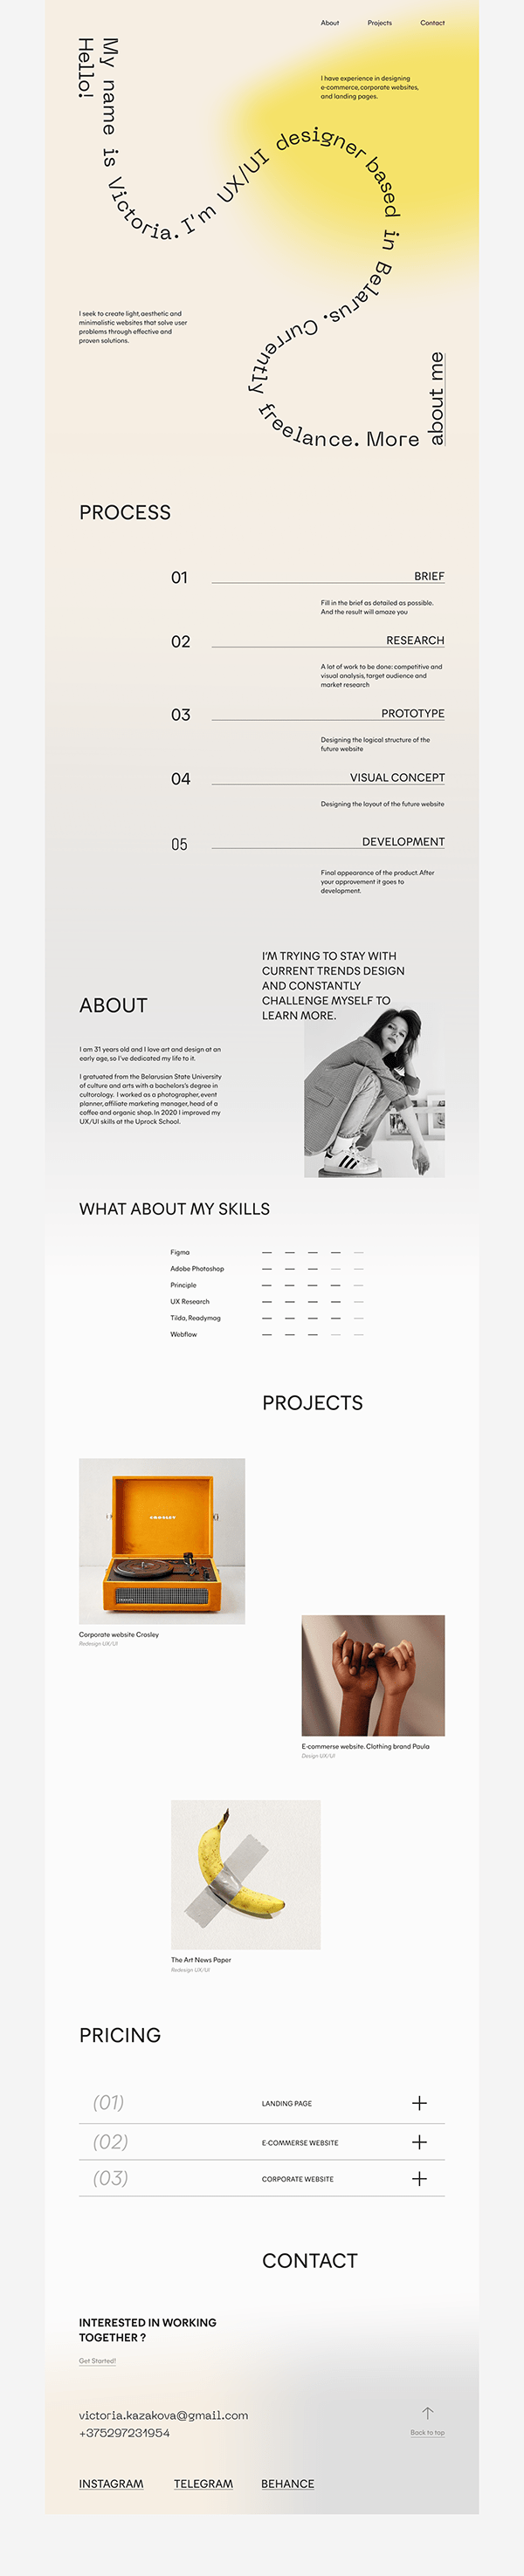 Portfolio Website Design. UX/UI